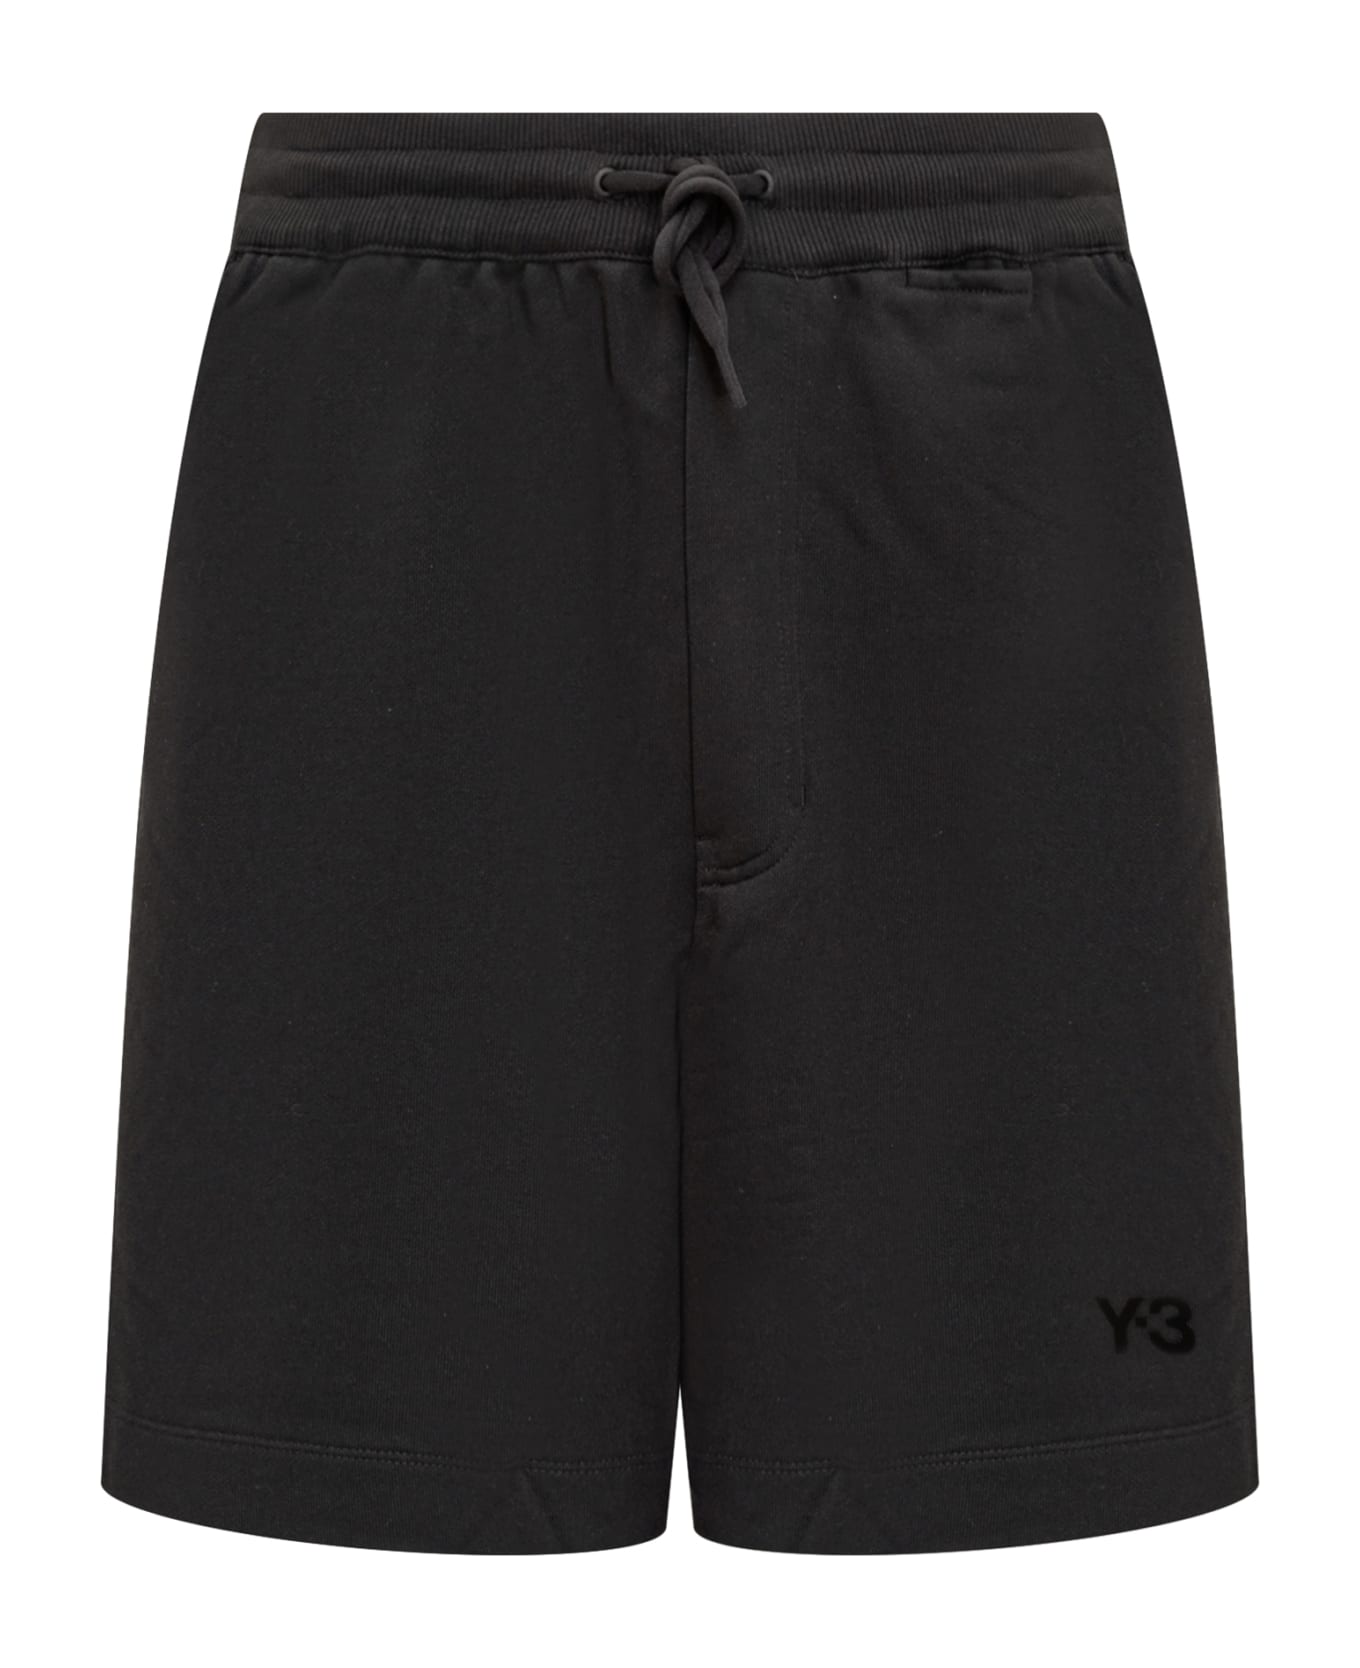 Y-3 Shorts With Logo - BLACK